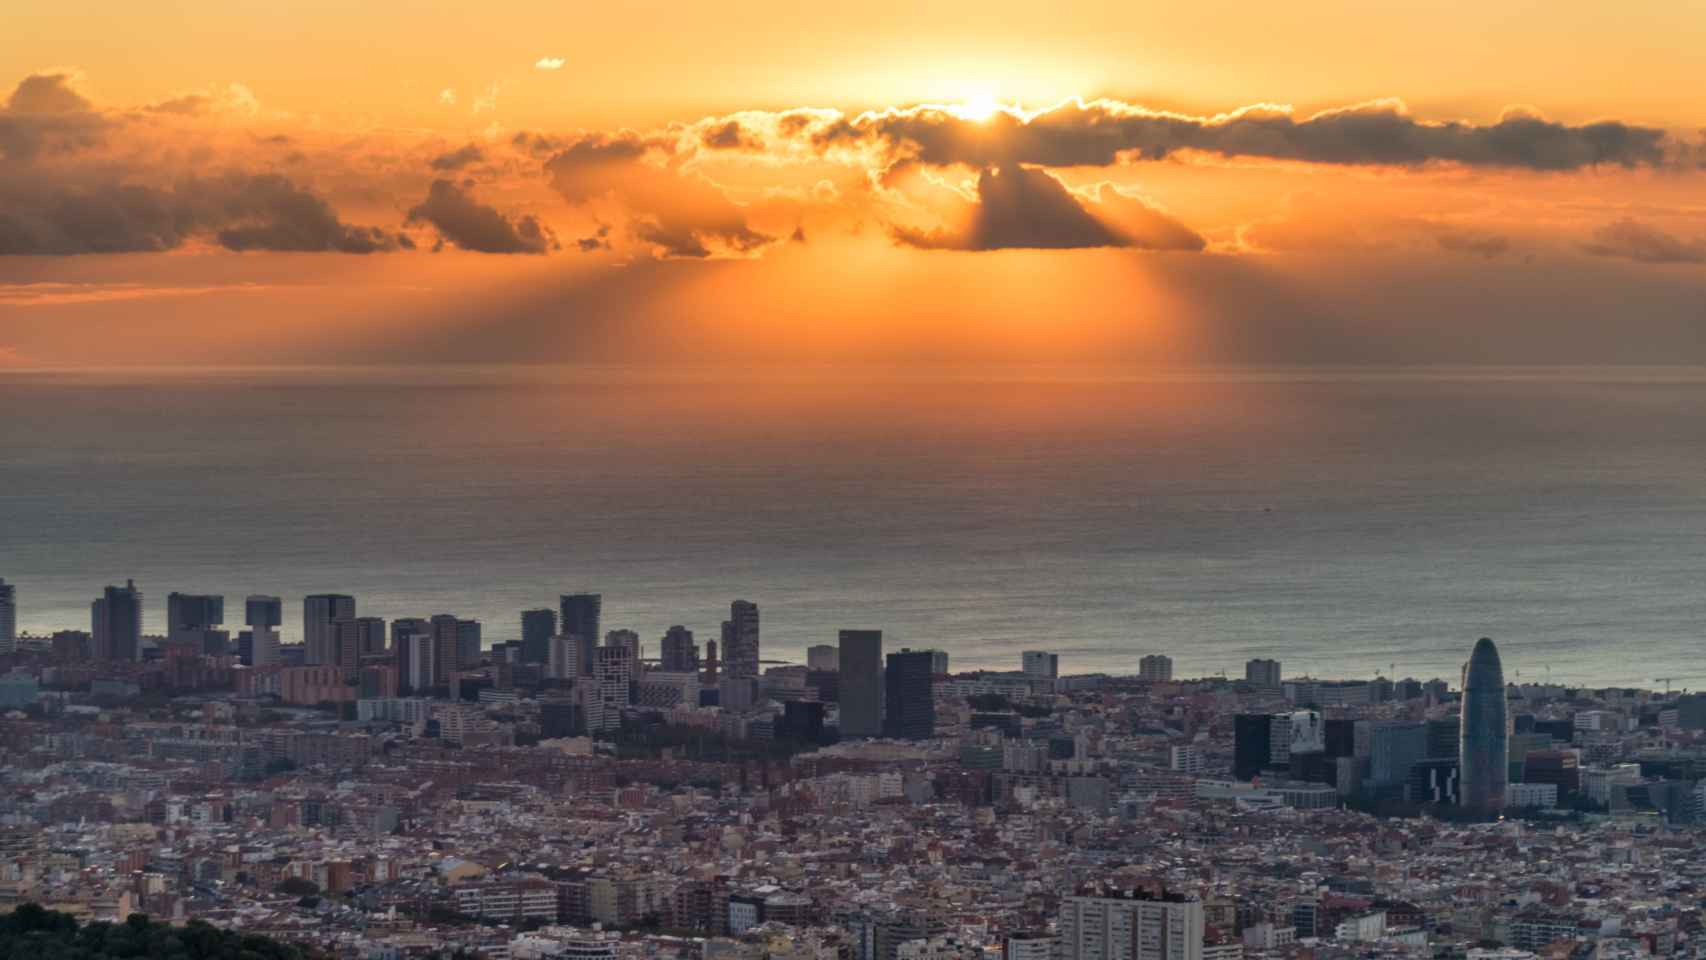 Panorámica de Barcelona realizada desde el Observatori Fabra / ALFONS PUERTAS - @alfons_pc